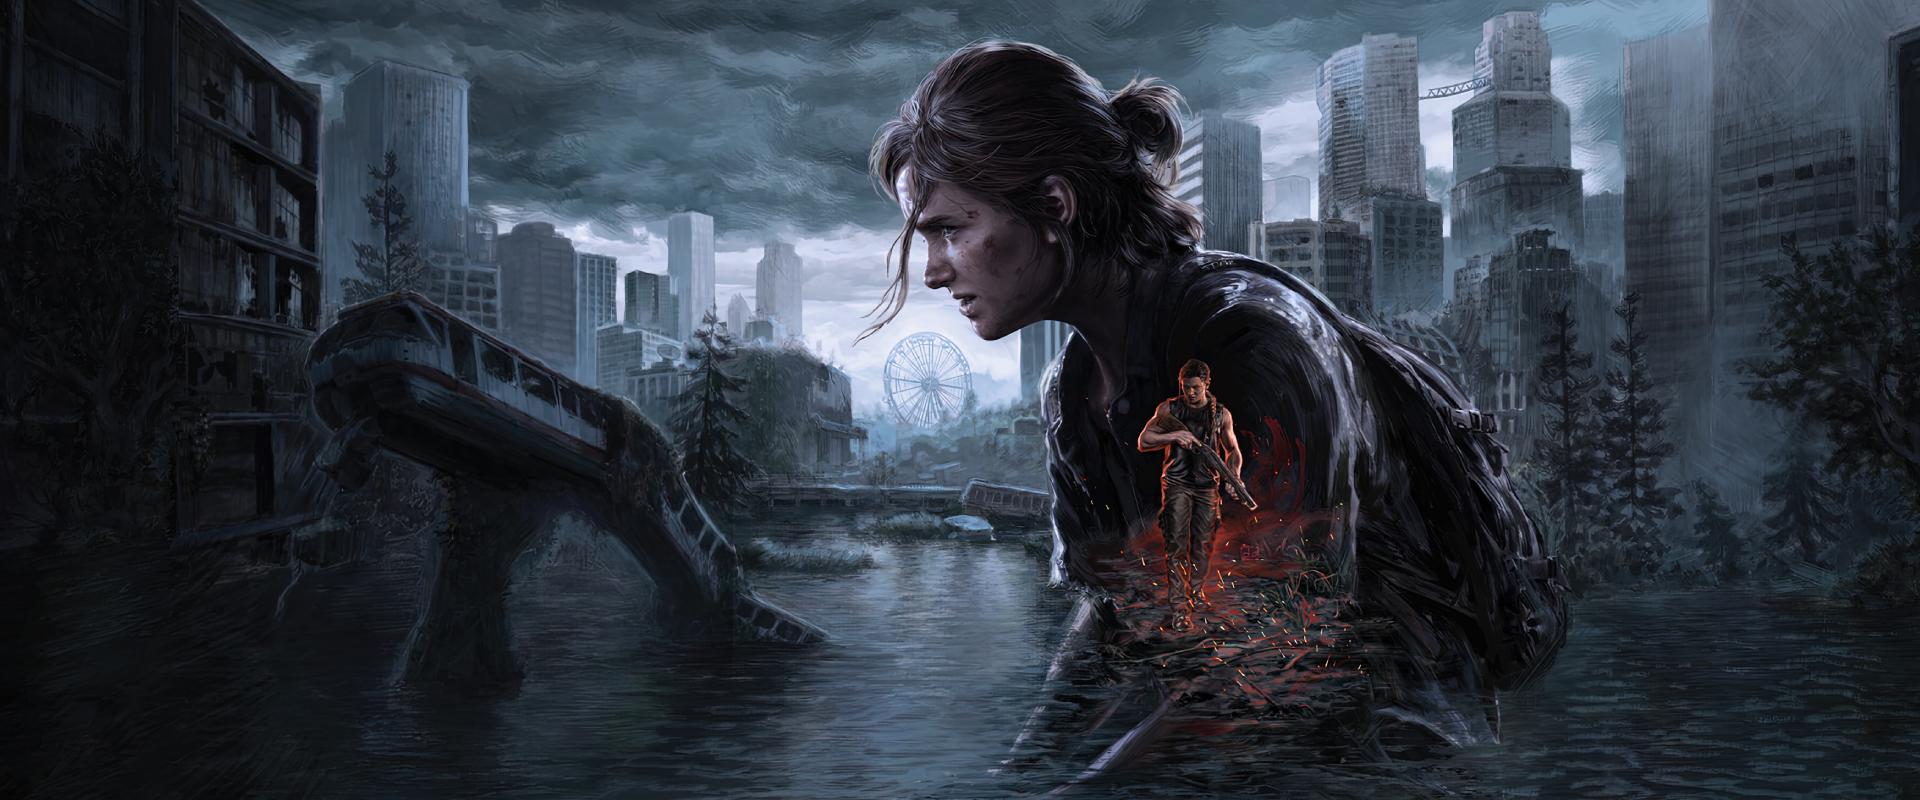 Nézzük meg együtt, hogy milyen lett a felújított The Last of Us Part II